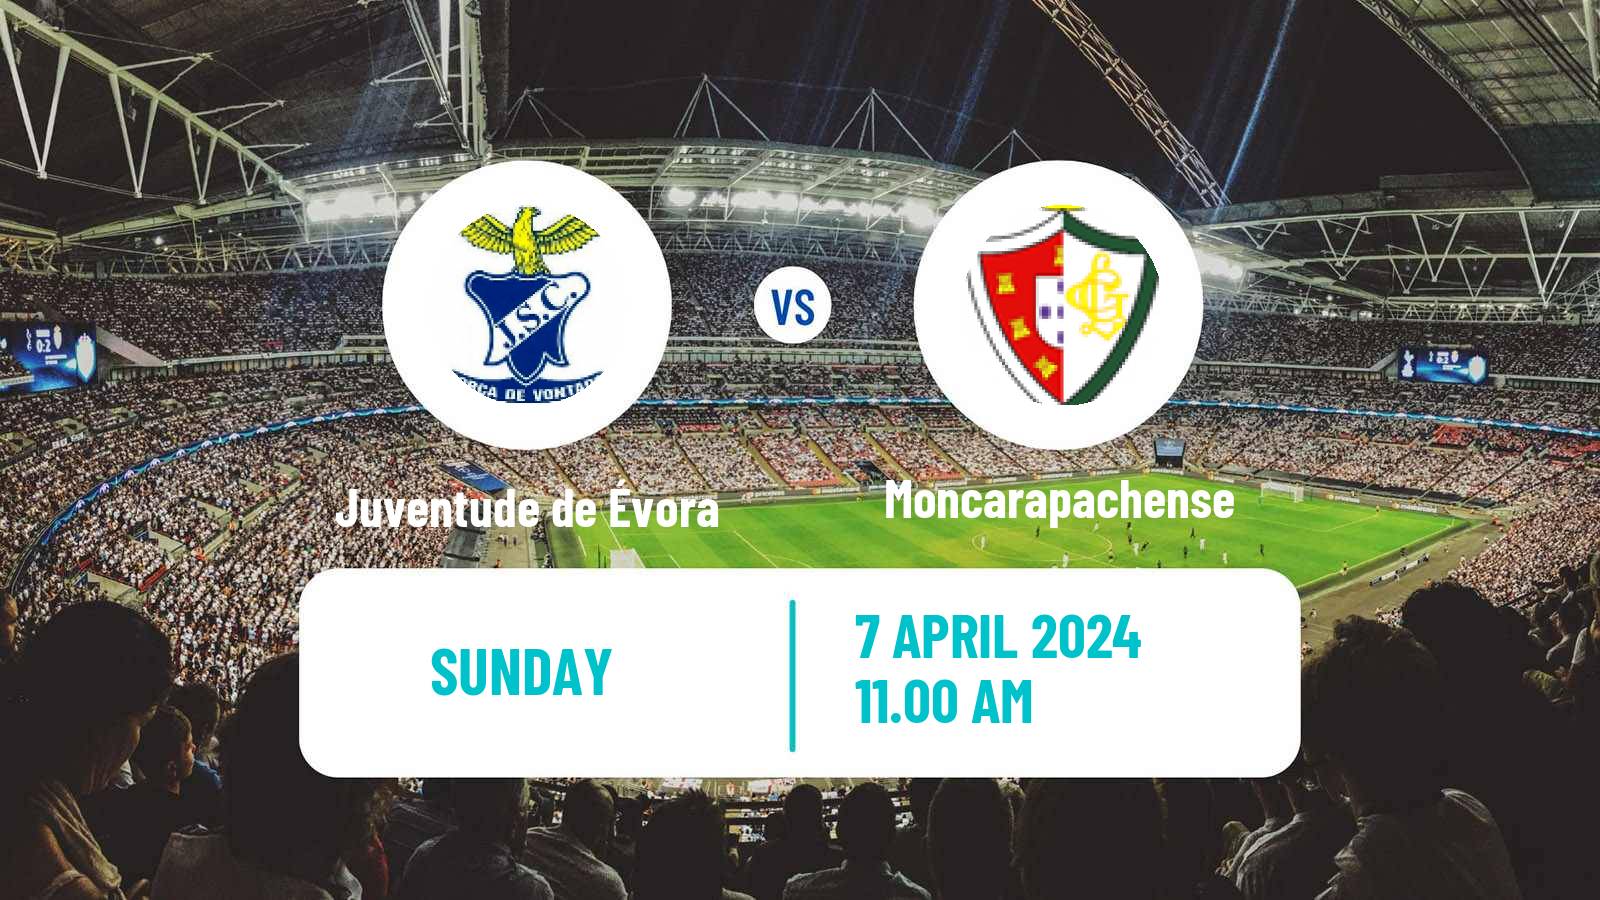 Soccer Campeonato de Portugal - Group D Juventude de Évora - Moncarapachense